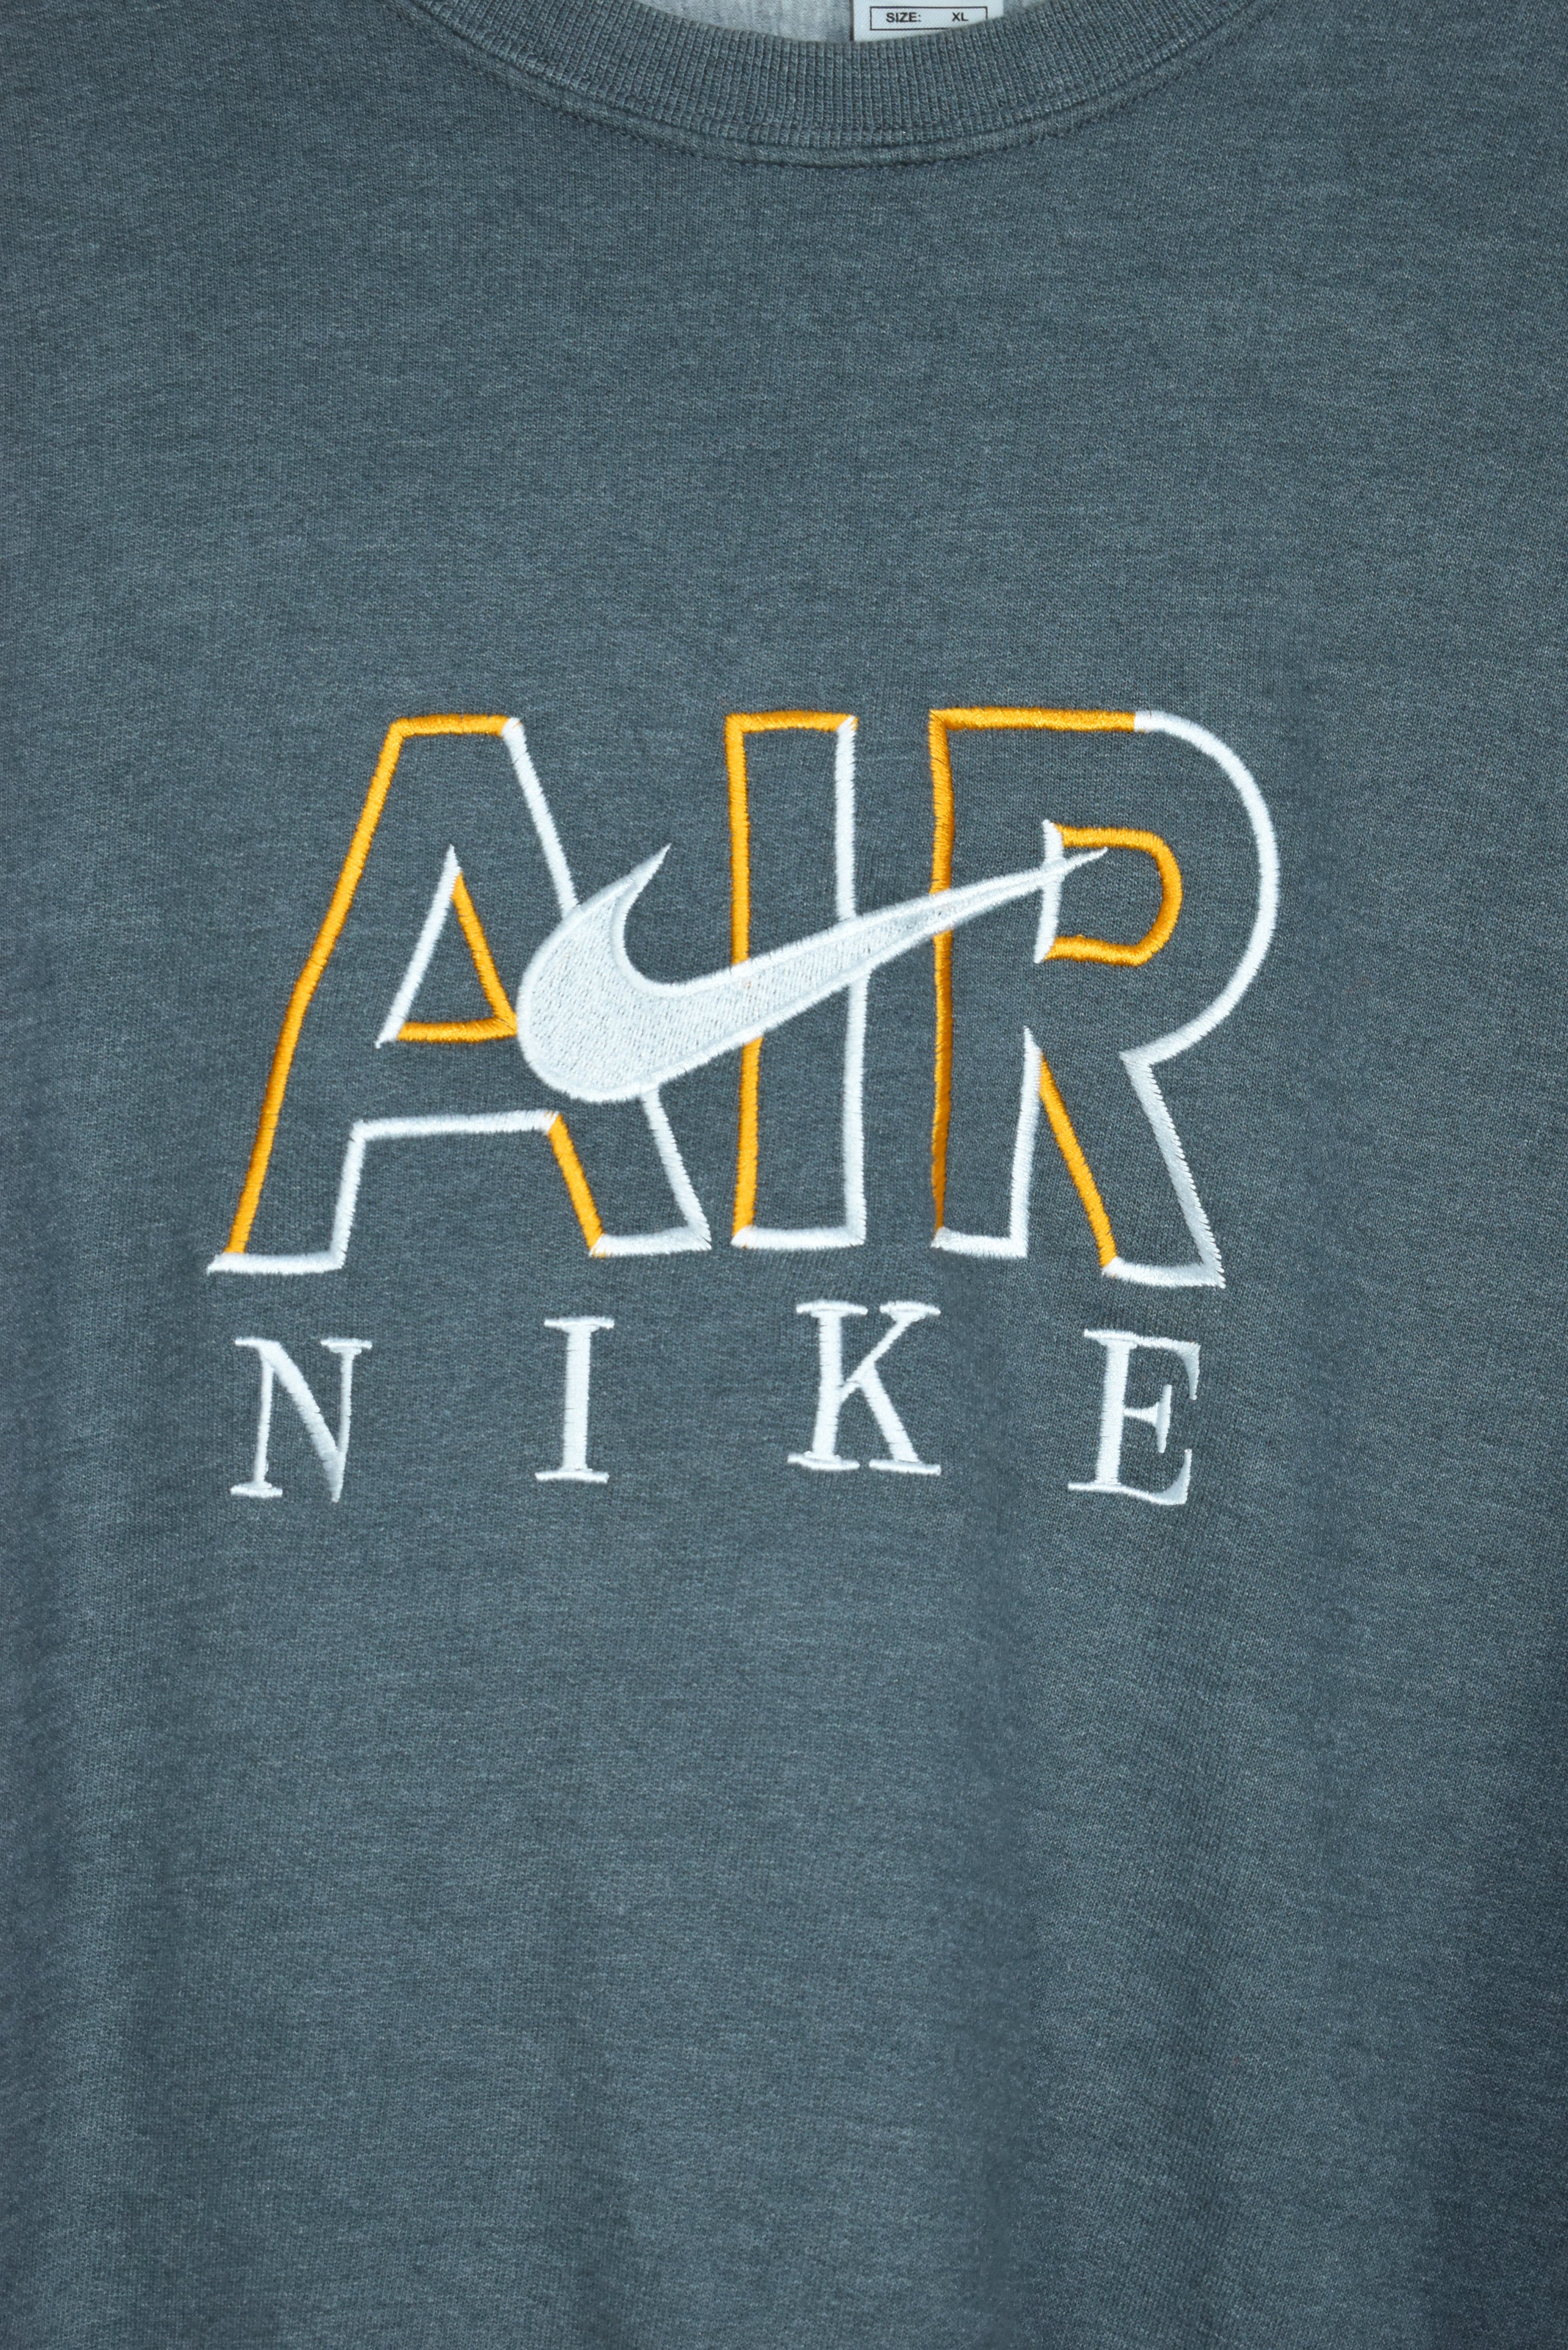 Vintage Nike Air Embroidery Bootleg Sweatshirt Grey Xlarge